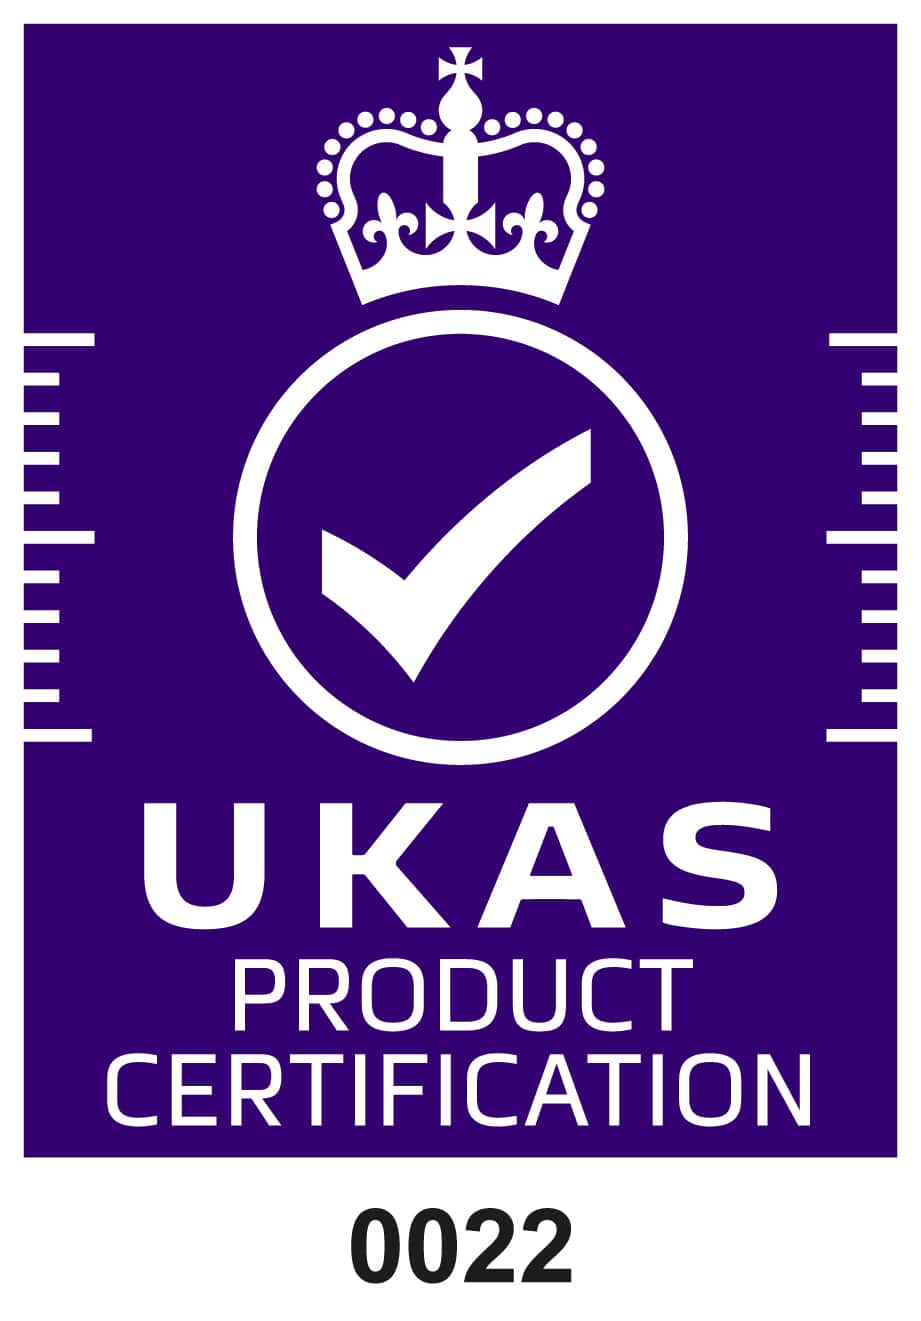 Ukas 認證符號 紫色底白字 產品認證